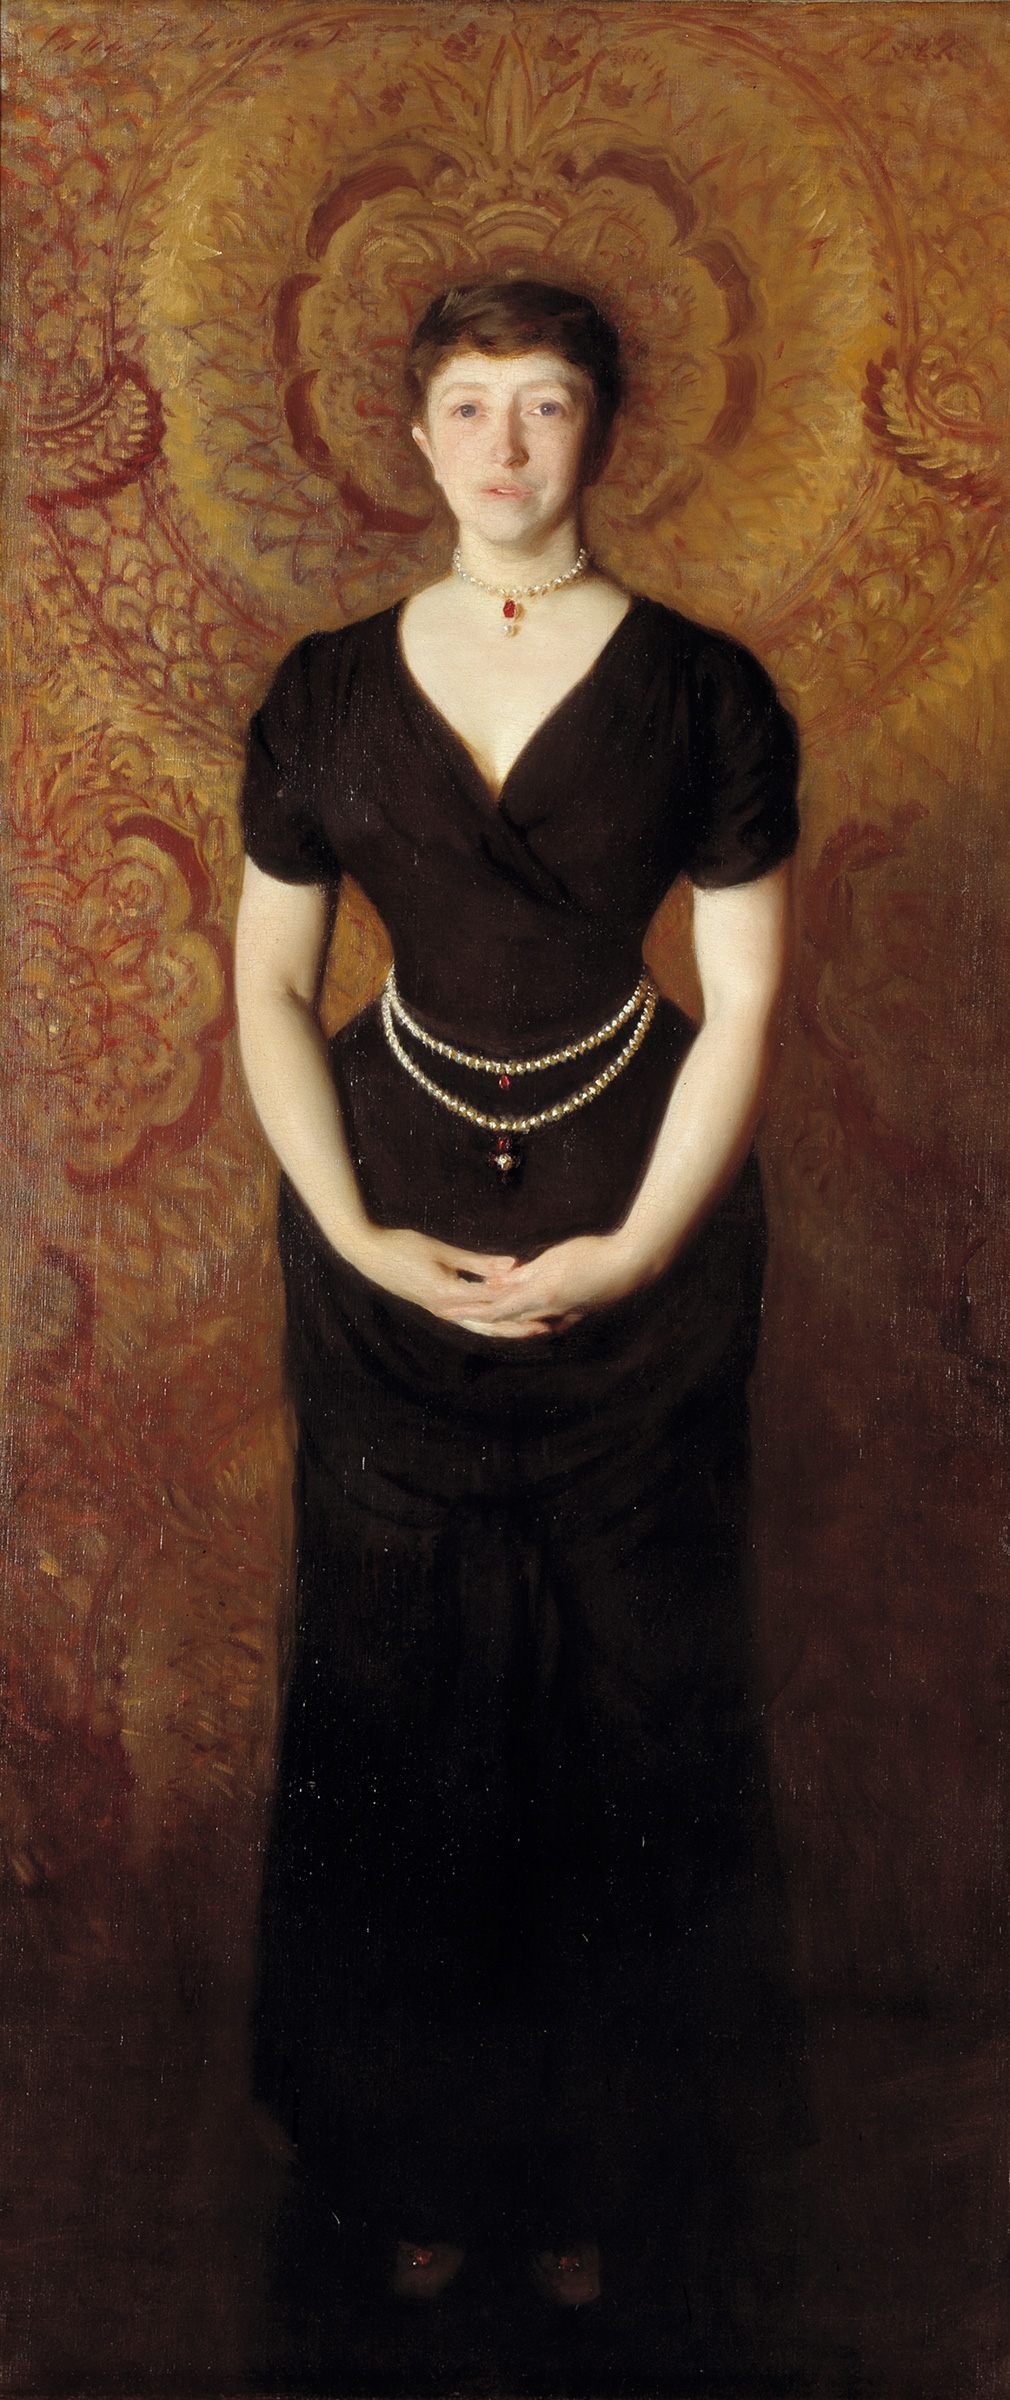 伊莎貝拉·斯圖爾特·加德納的畫像 by John Singer Sargent - 1888 - 190 x 80 cm 